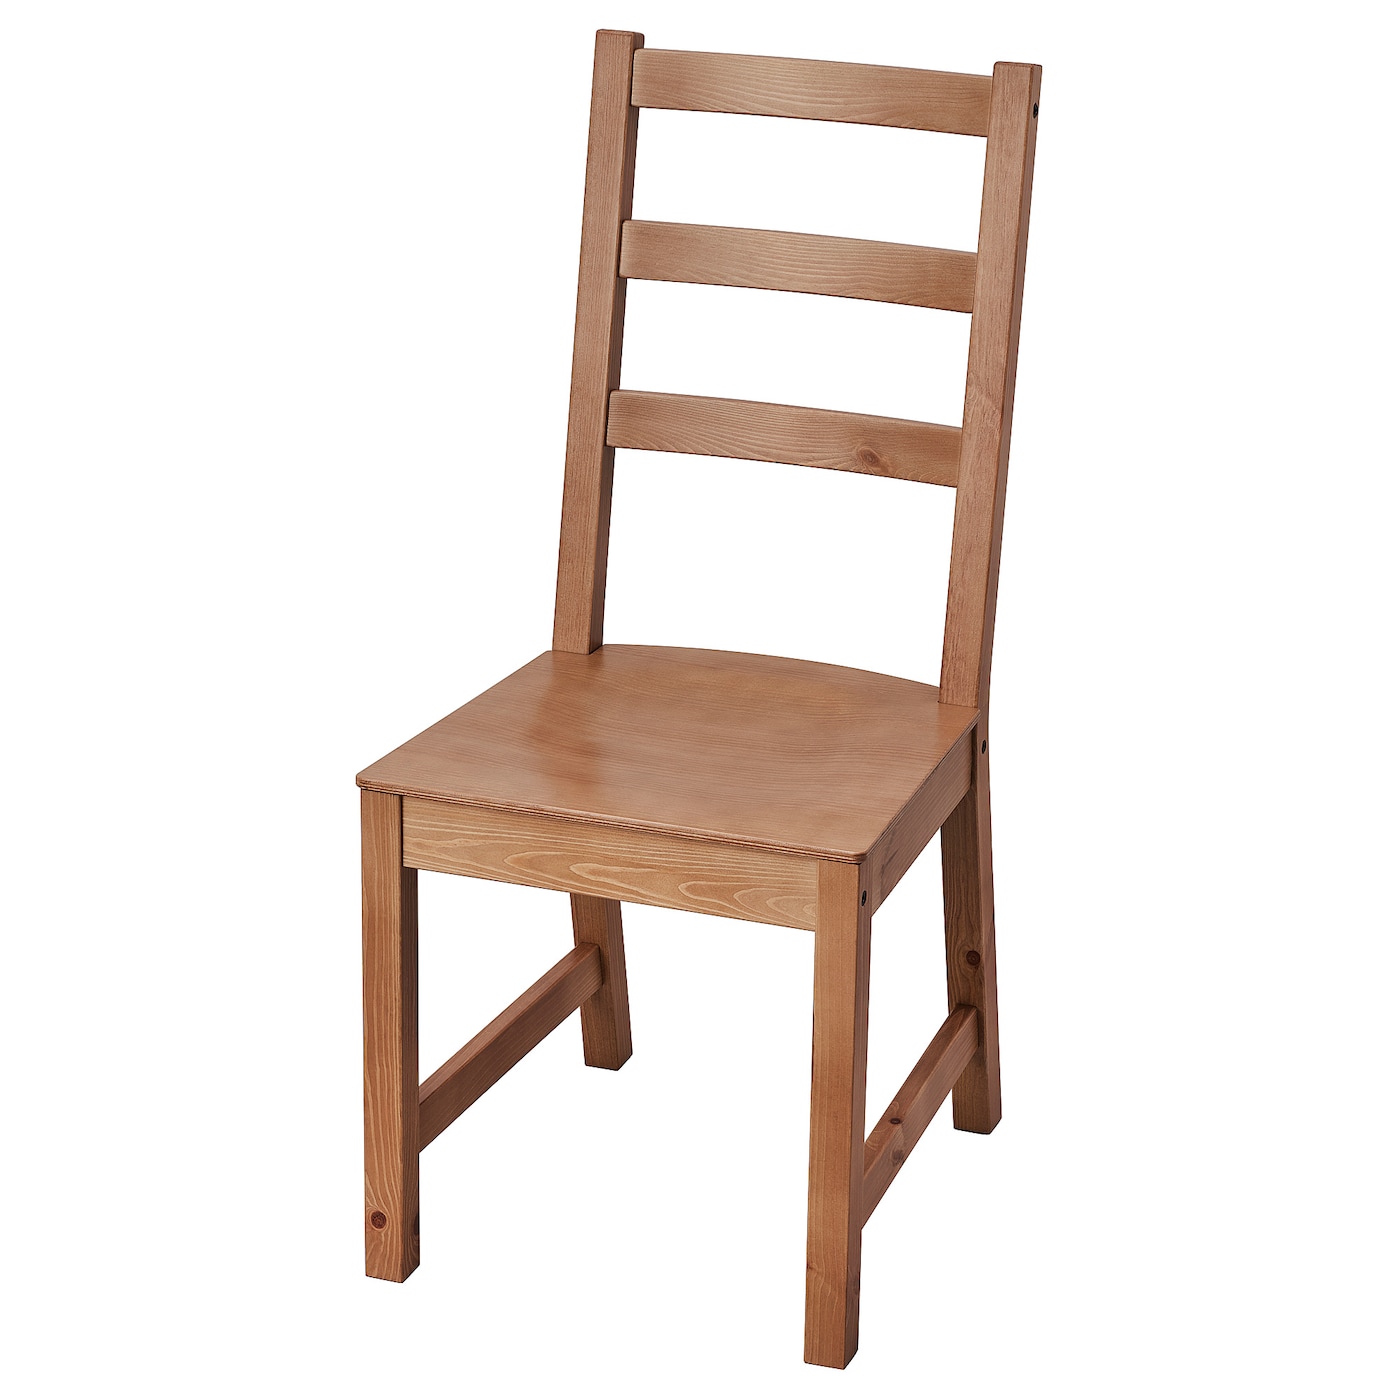 Деревянный стул - NORDVIKEN ИКЕА, 97Х54Х44 см, коричневый, НОРДВИКЕН ИКЕА